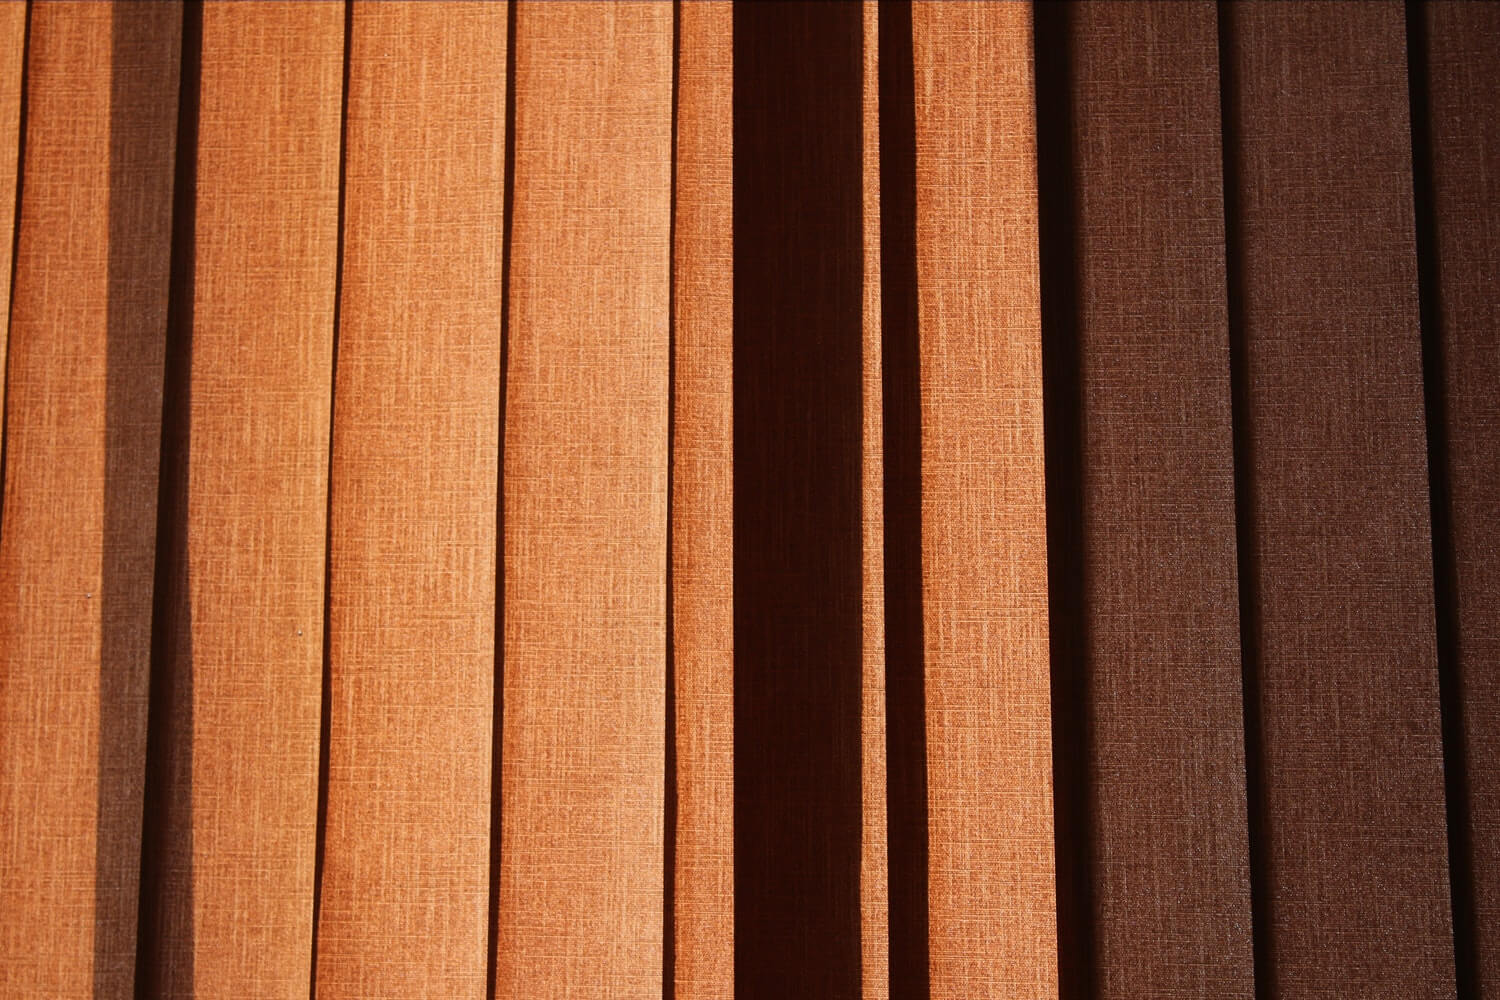 Matching Existing Hardwood To New, Matching Existing Hardwood Floors